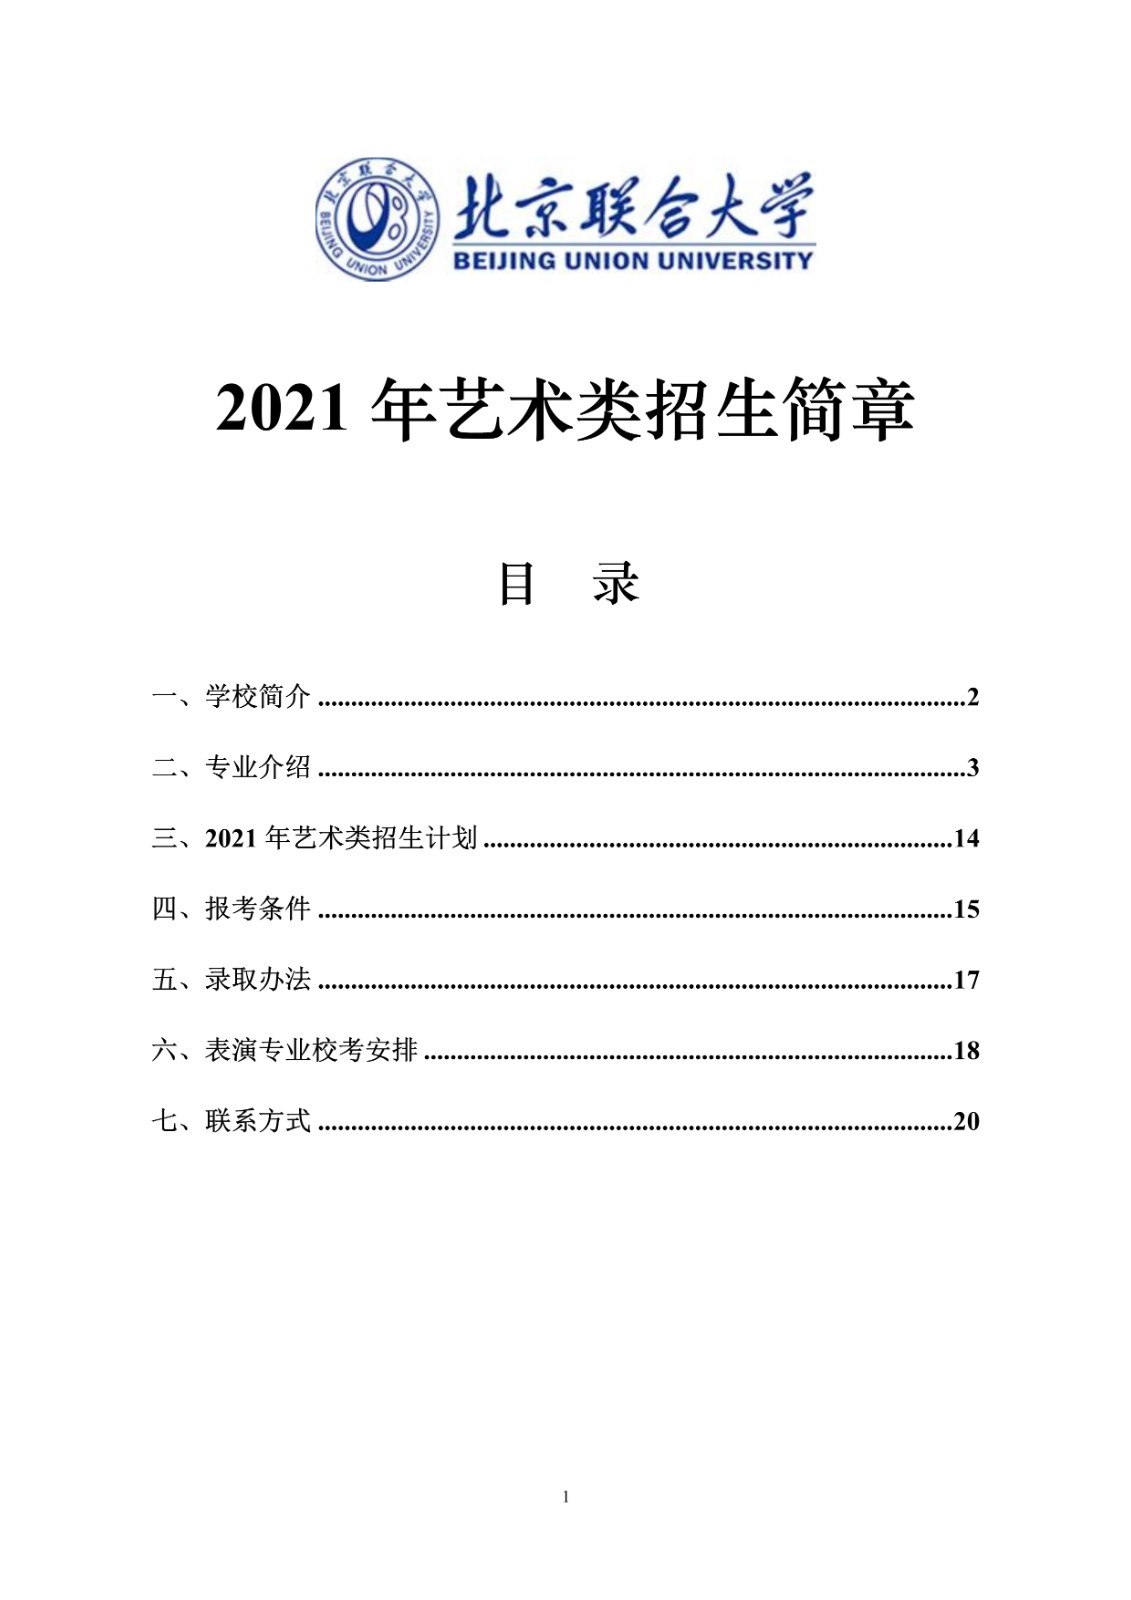 2021年北京联合大学招生简章